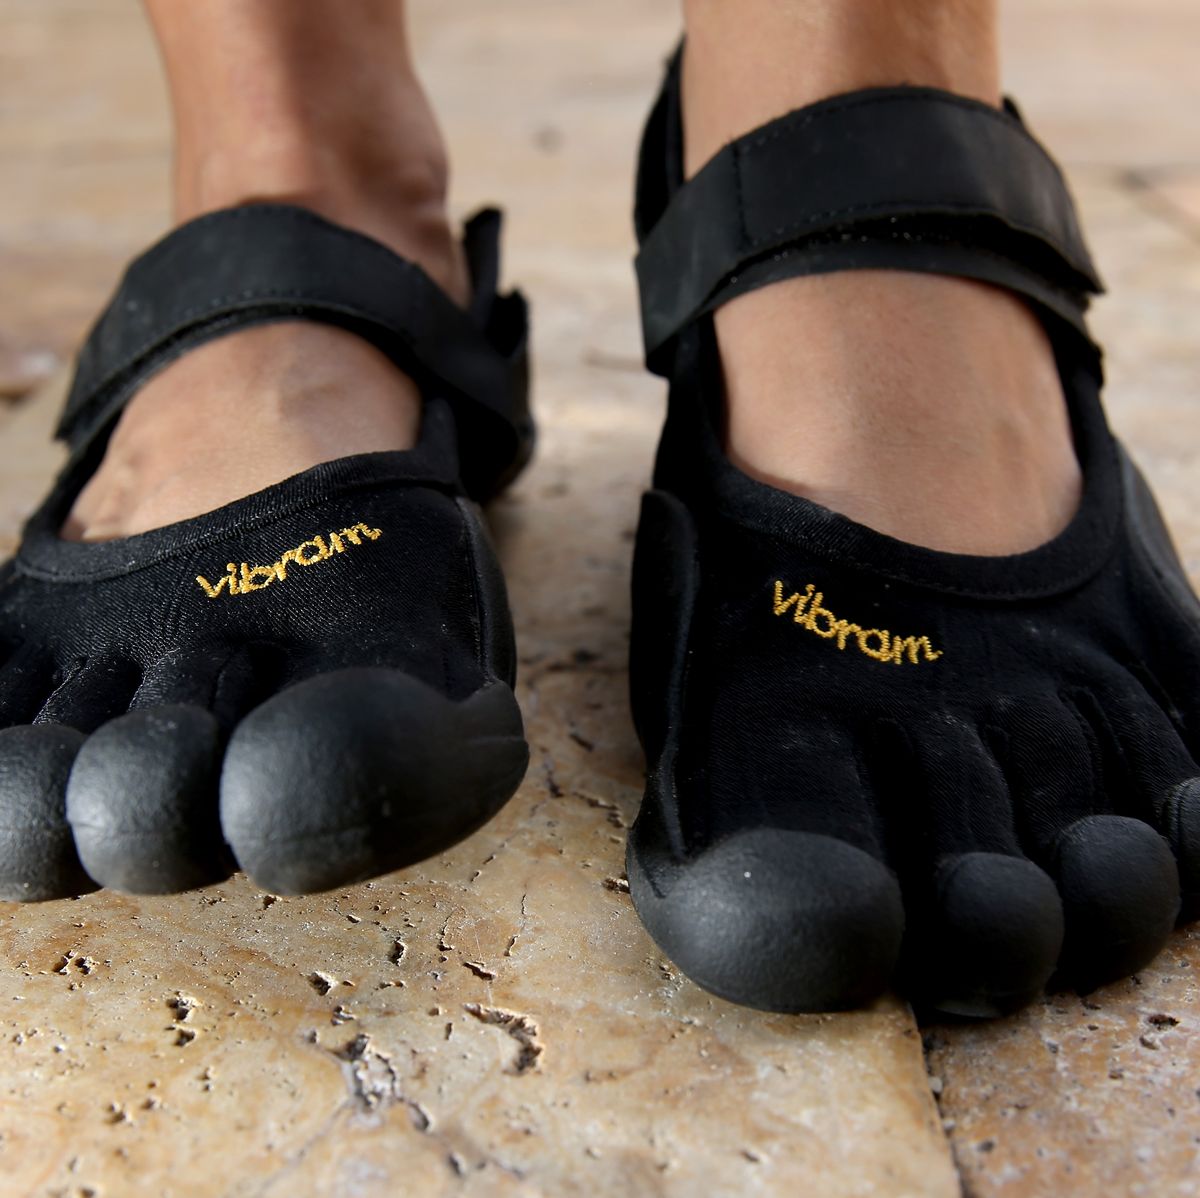 Ventajas de correr con zapatillas minimalistas: 5+1 modelos – *faircompanies